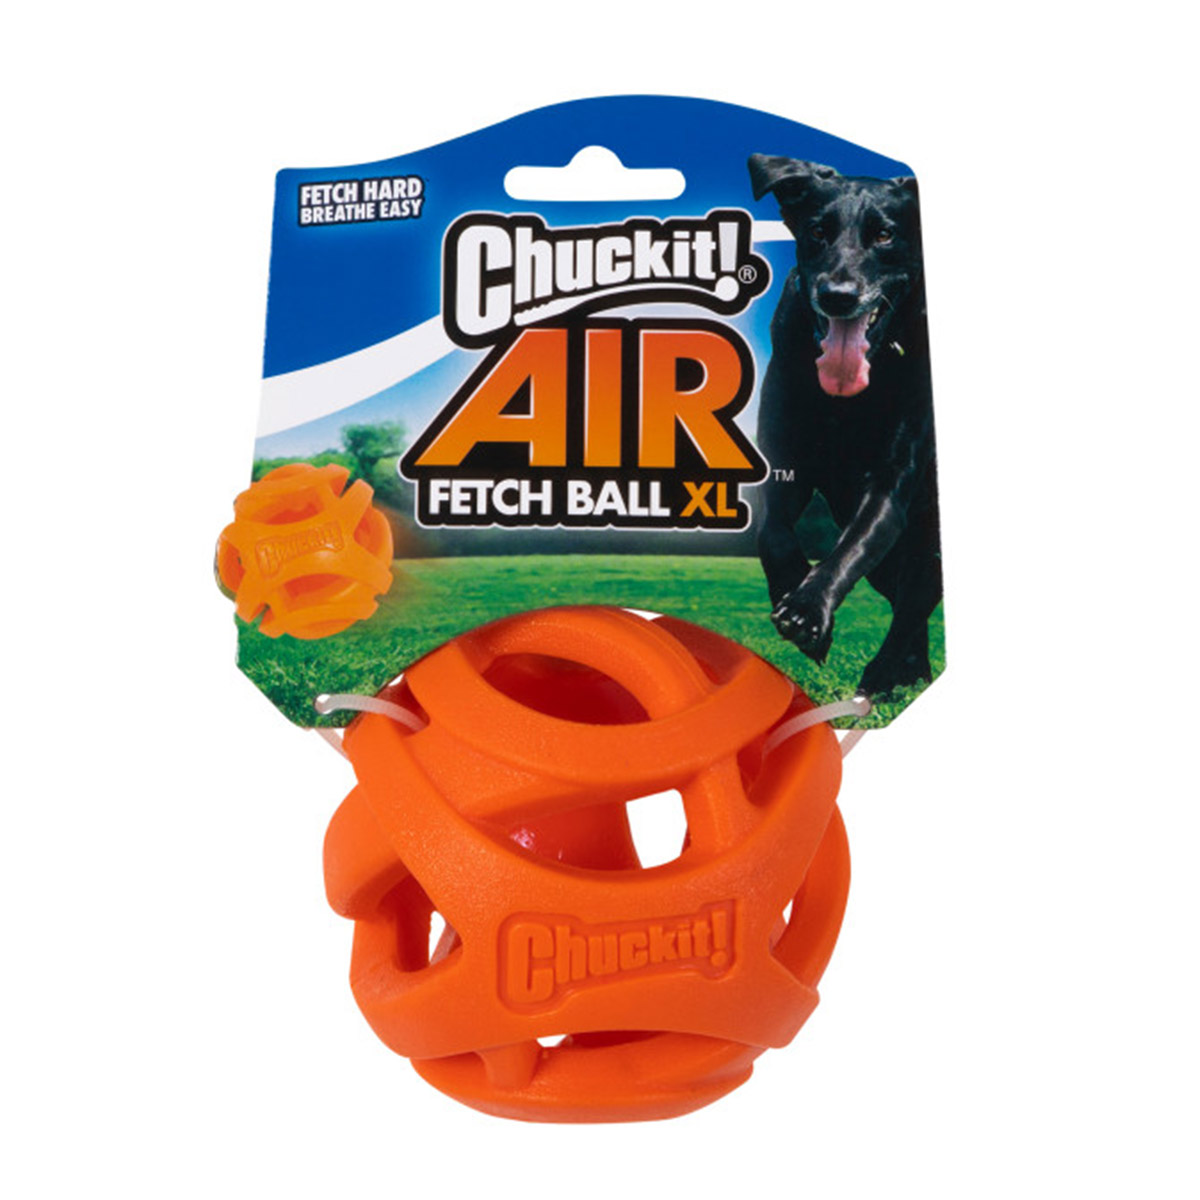 Chuckit! Air Fetch Ball XL